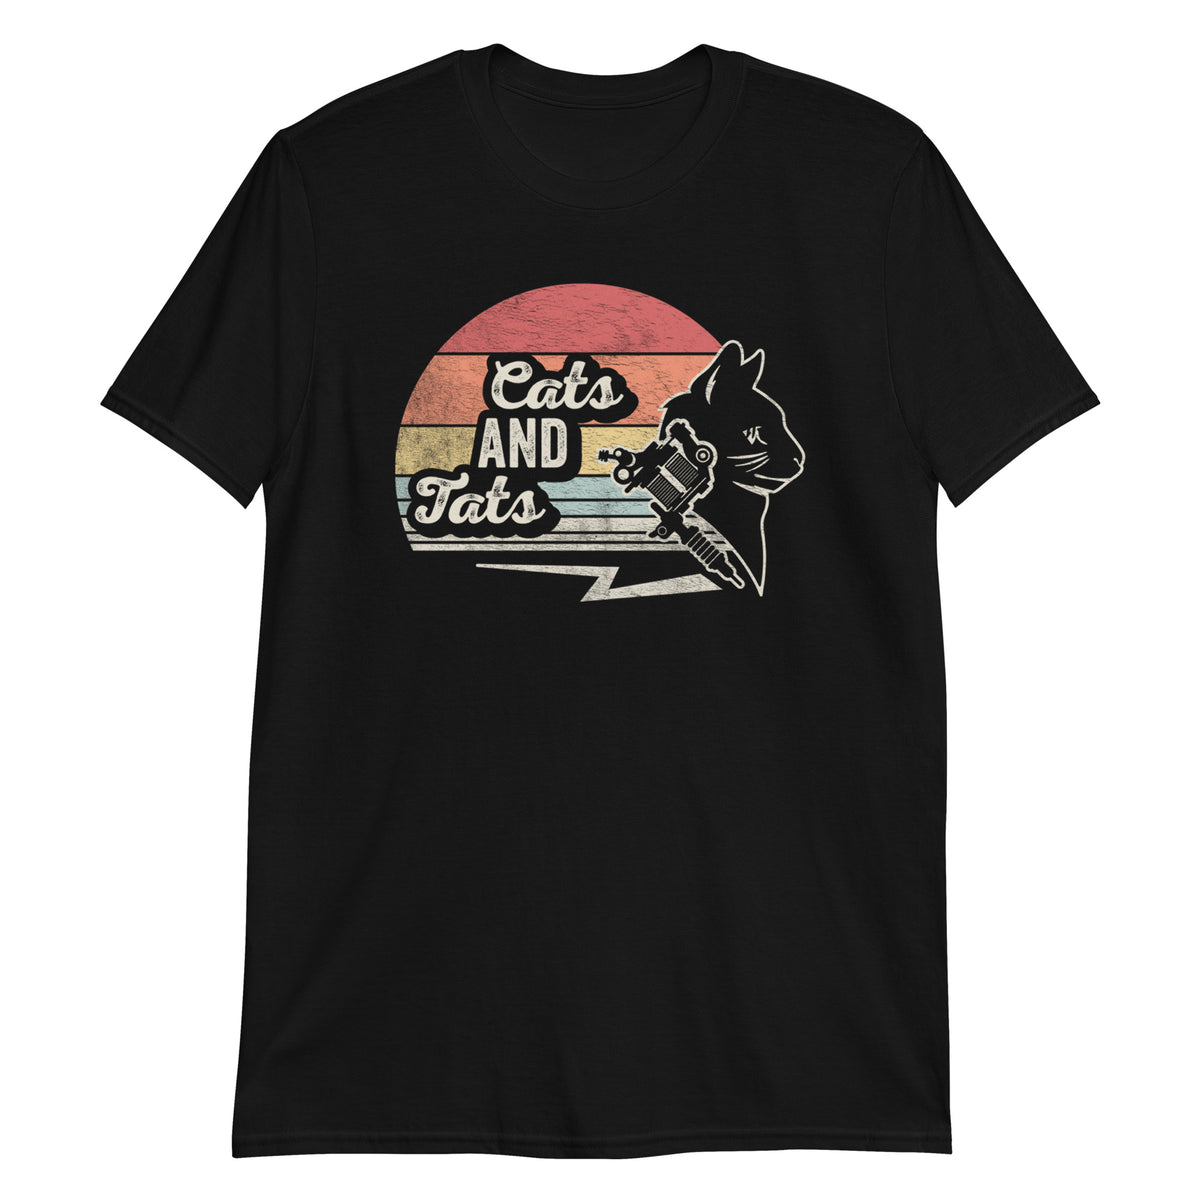 Cats and Tats T-Shirt